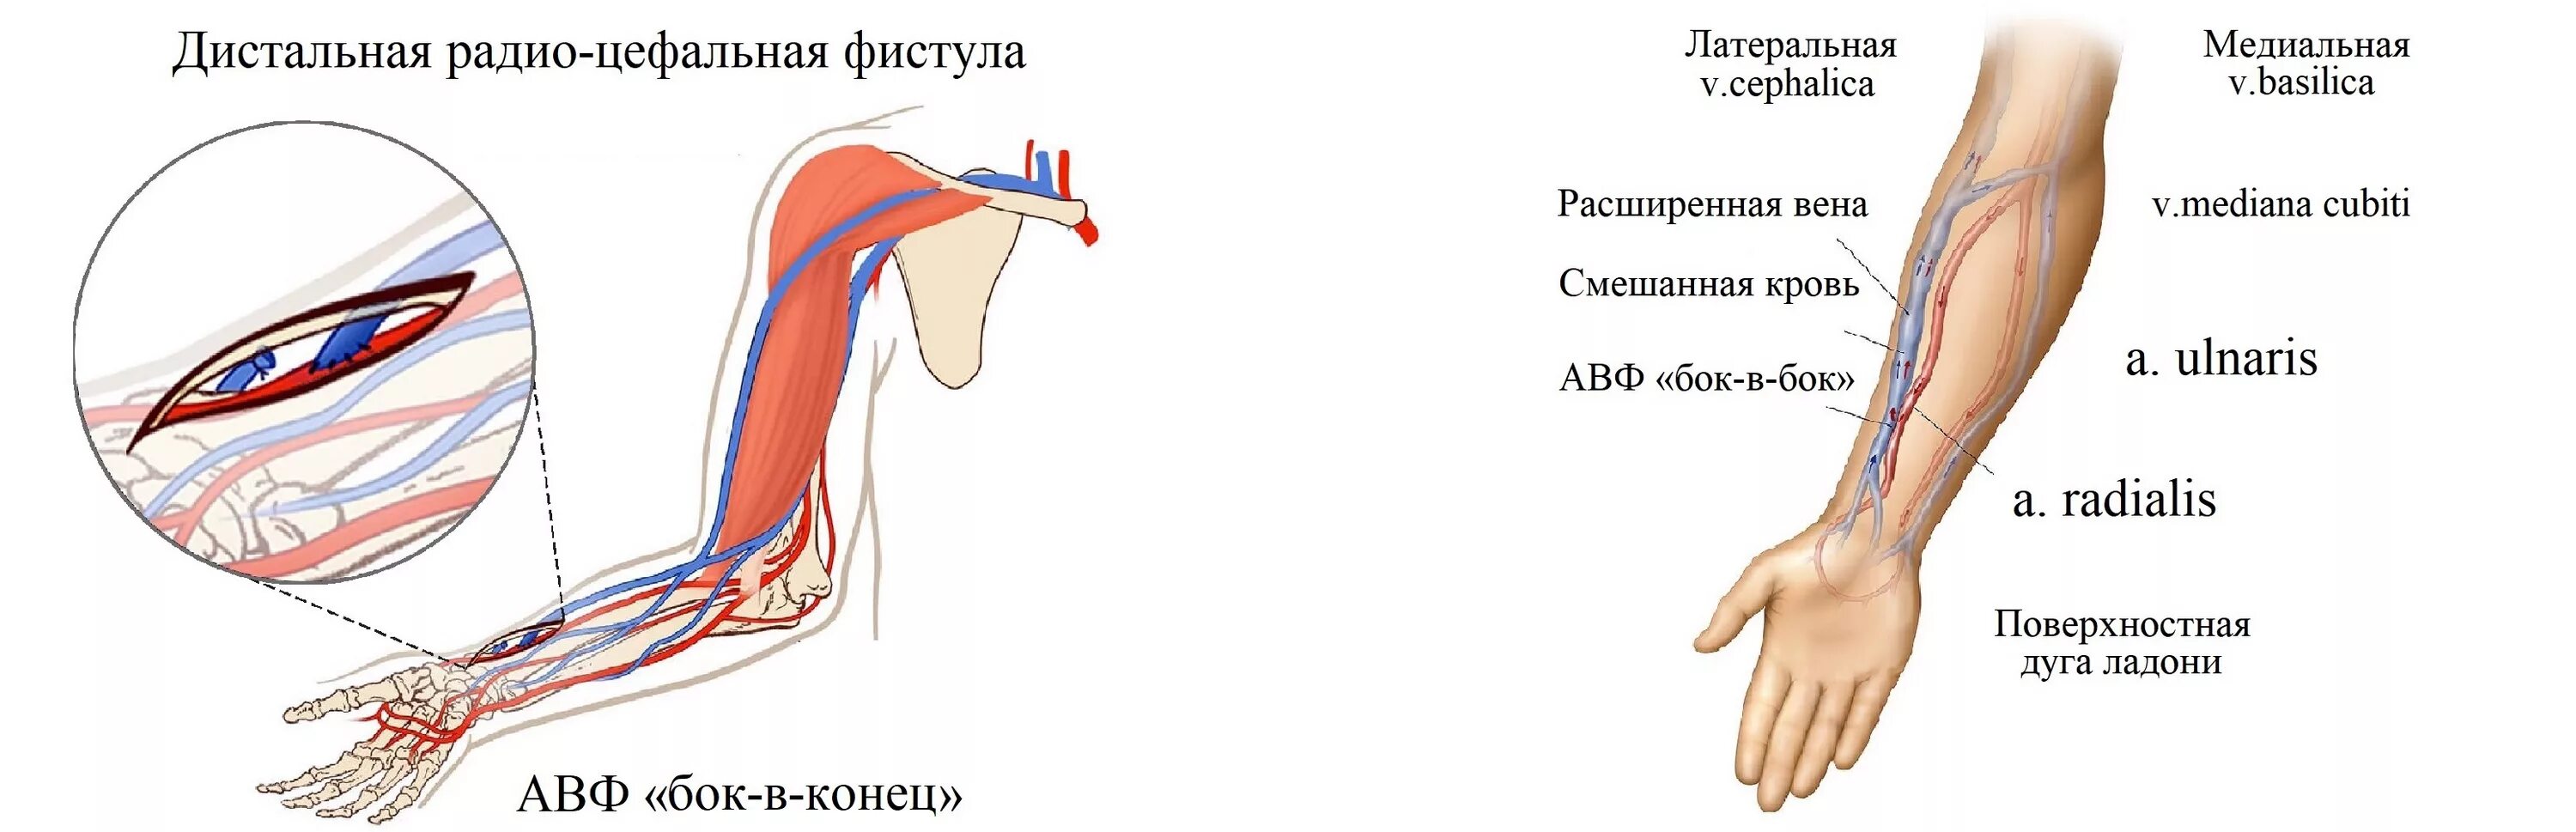 Фистула. Артерио-венозная фистула для гемодиализа. Протез фистулы для гемодиализа. Сосуды фистула для гемодиализа.